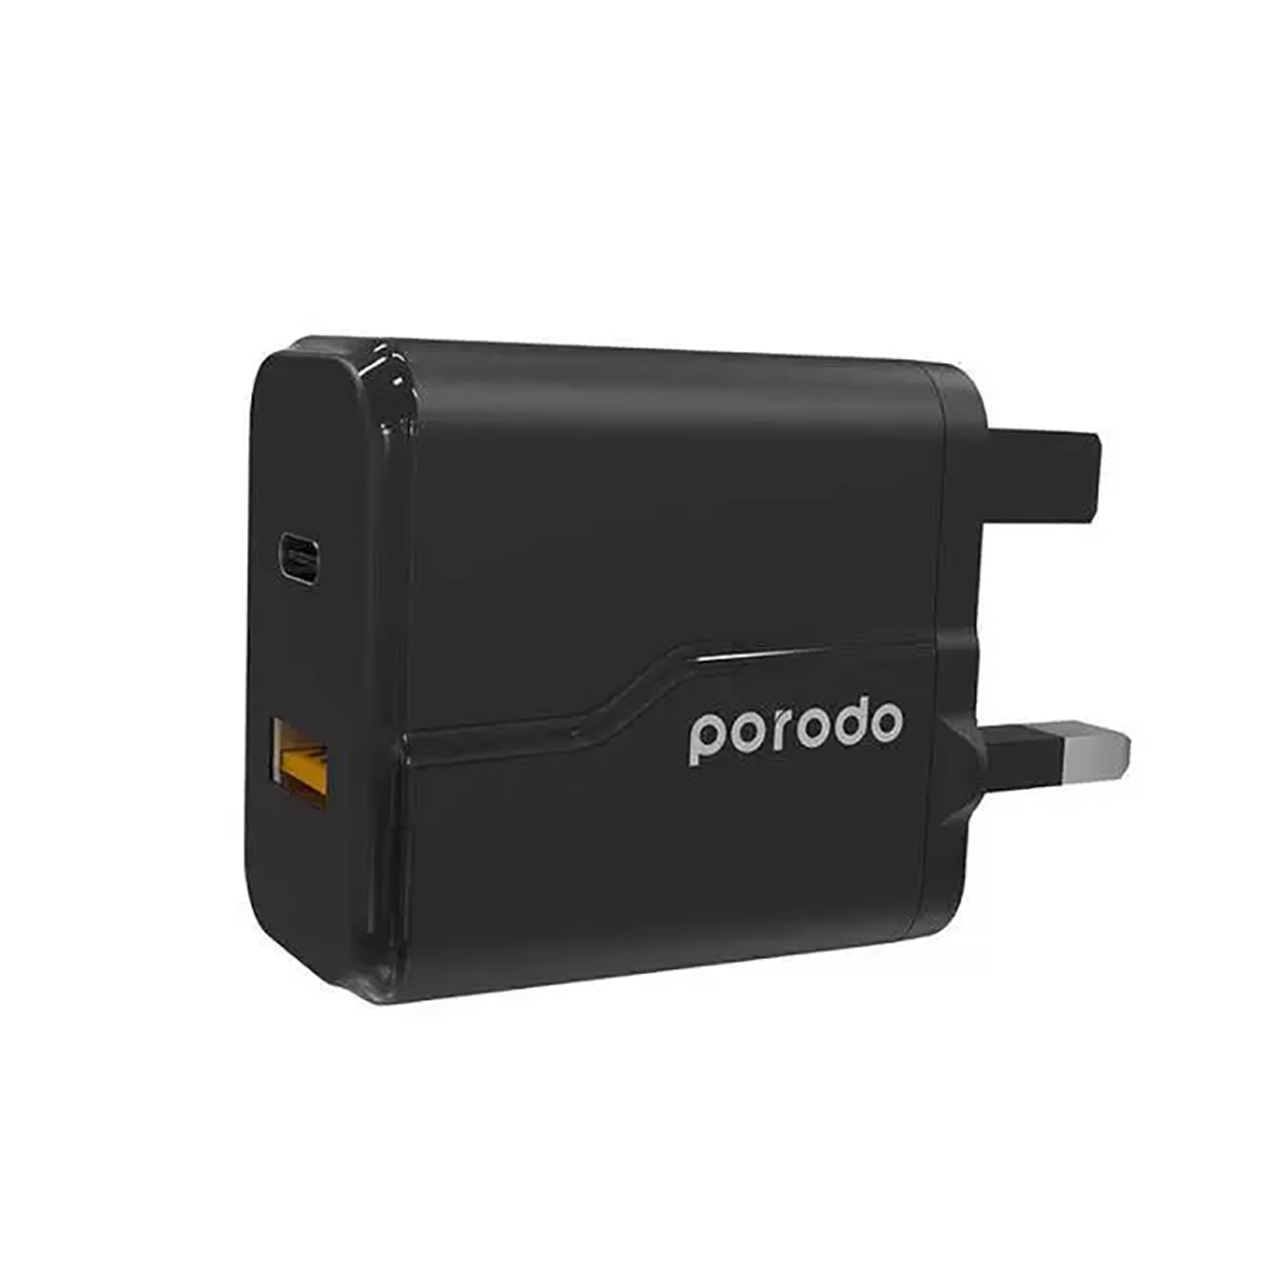 شارژر 20 وات پرودو Porodo به همراه کابل شارژ Type- C